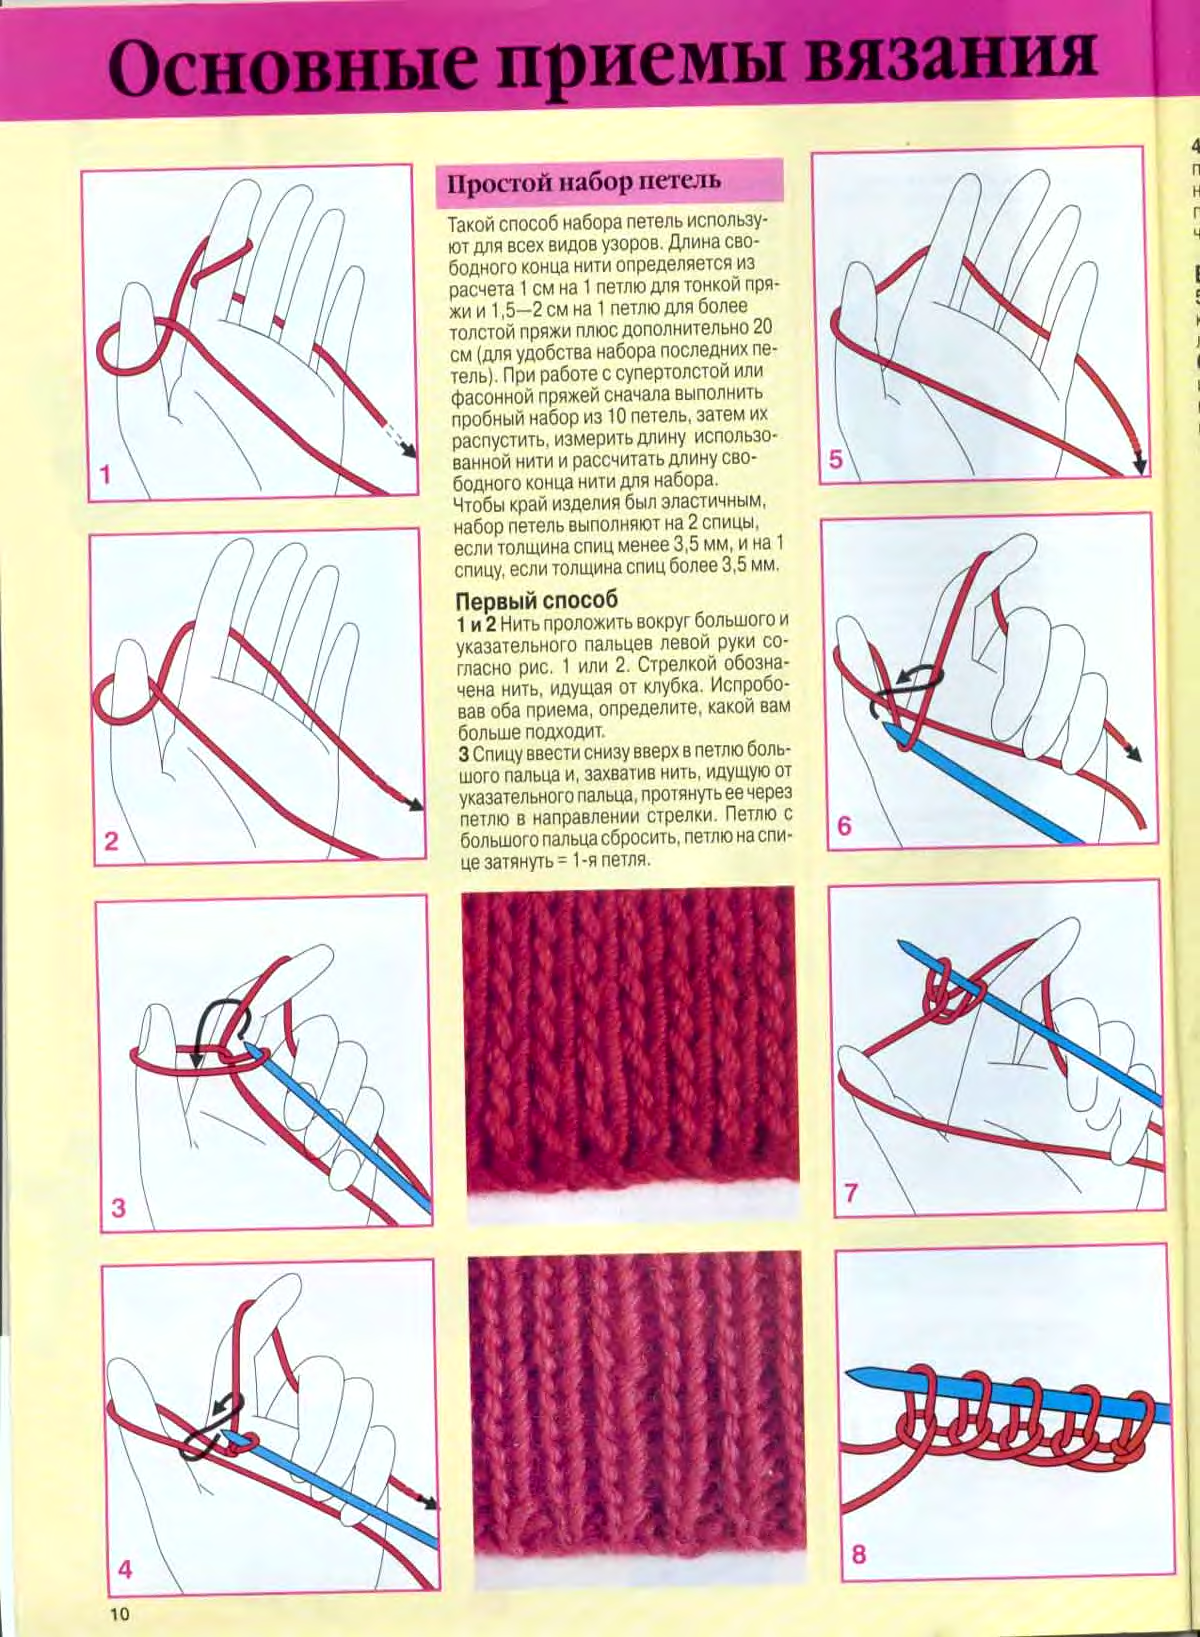 1 урок вязания. Вязка на спицах для начинающих уроки пошагово. Вяжем шарф спицами для начинающих пошагово. Вязание шарфа спицами для начинающих пошагово. Как вязать на спицах для начинающих пошагово схемы.